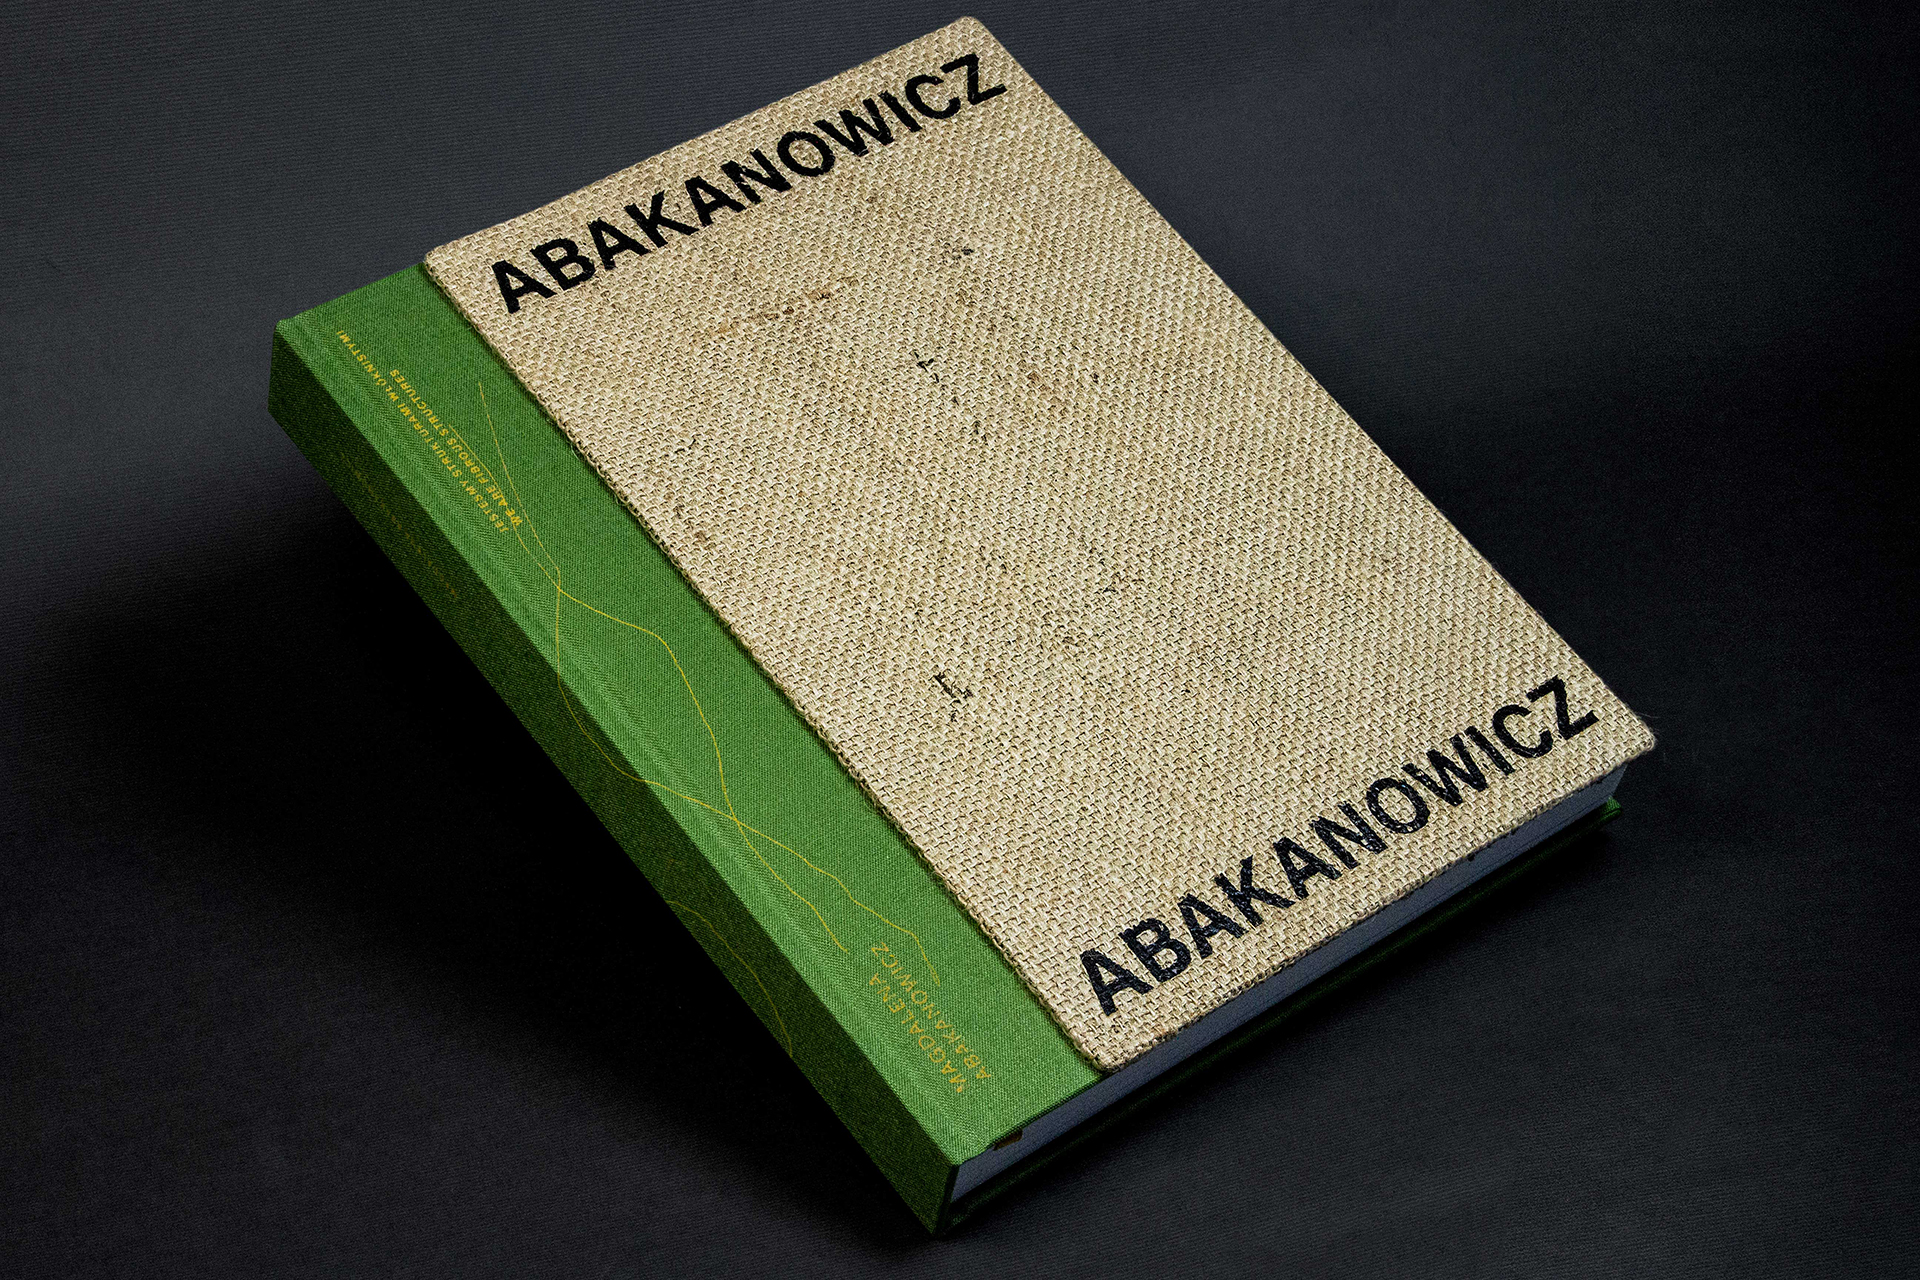 Okładka książki o Magdalenie Abakanowicz.